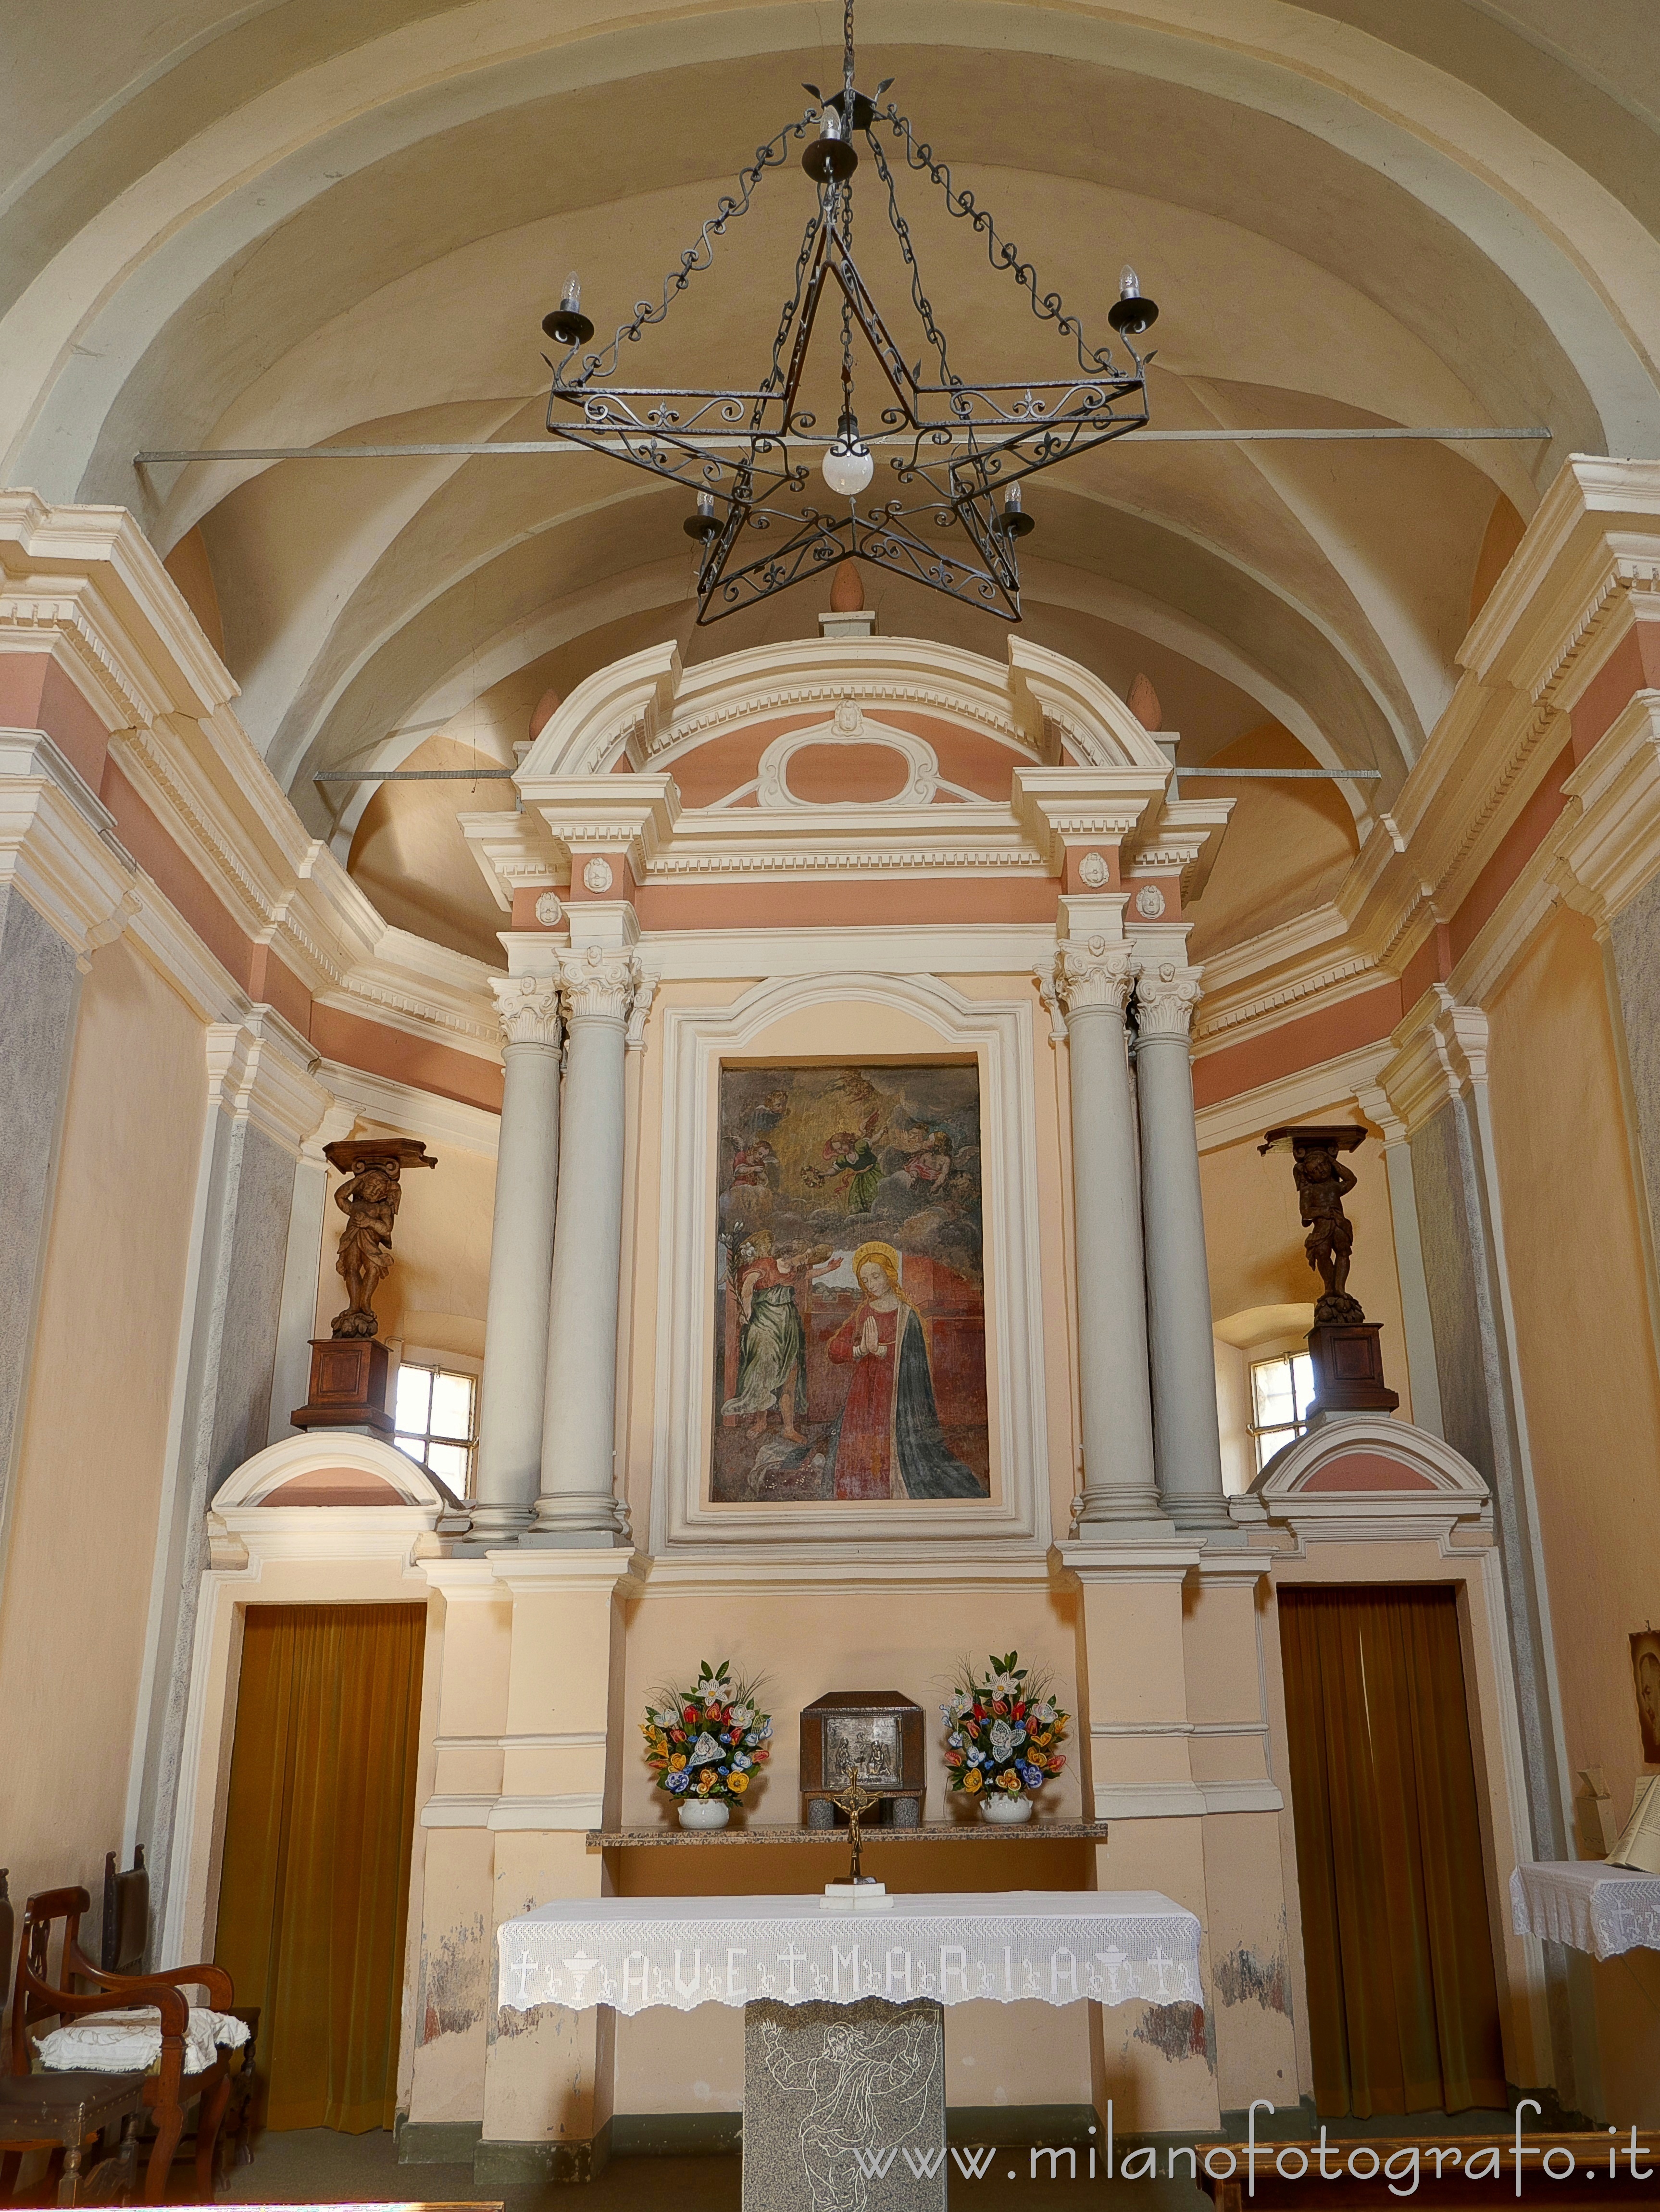 Sandigliano (Biella, Italy): Presbytery of the Sanctuary of the Virgin of the Boscazzo - Sandigliano (Biella, Italy)